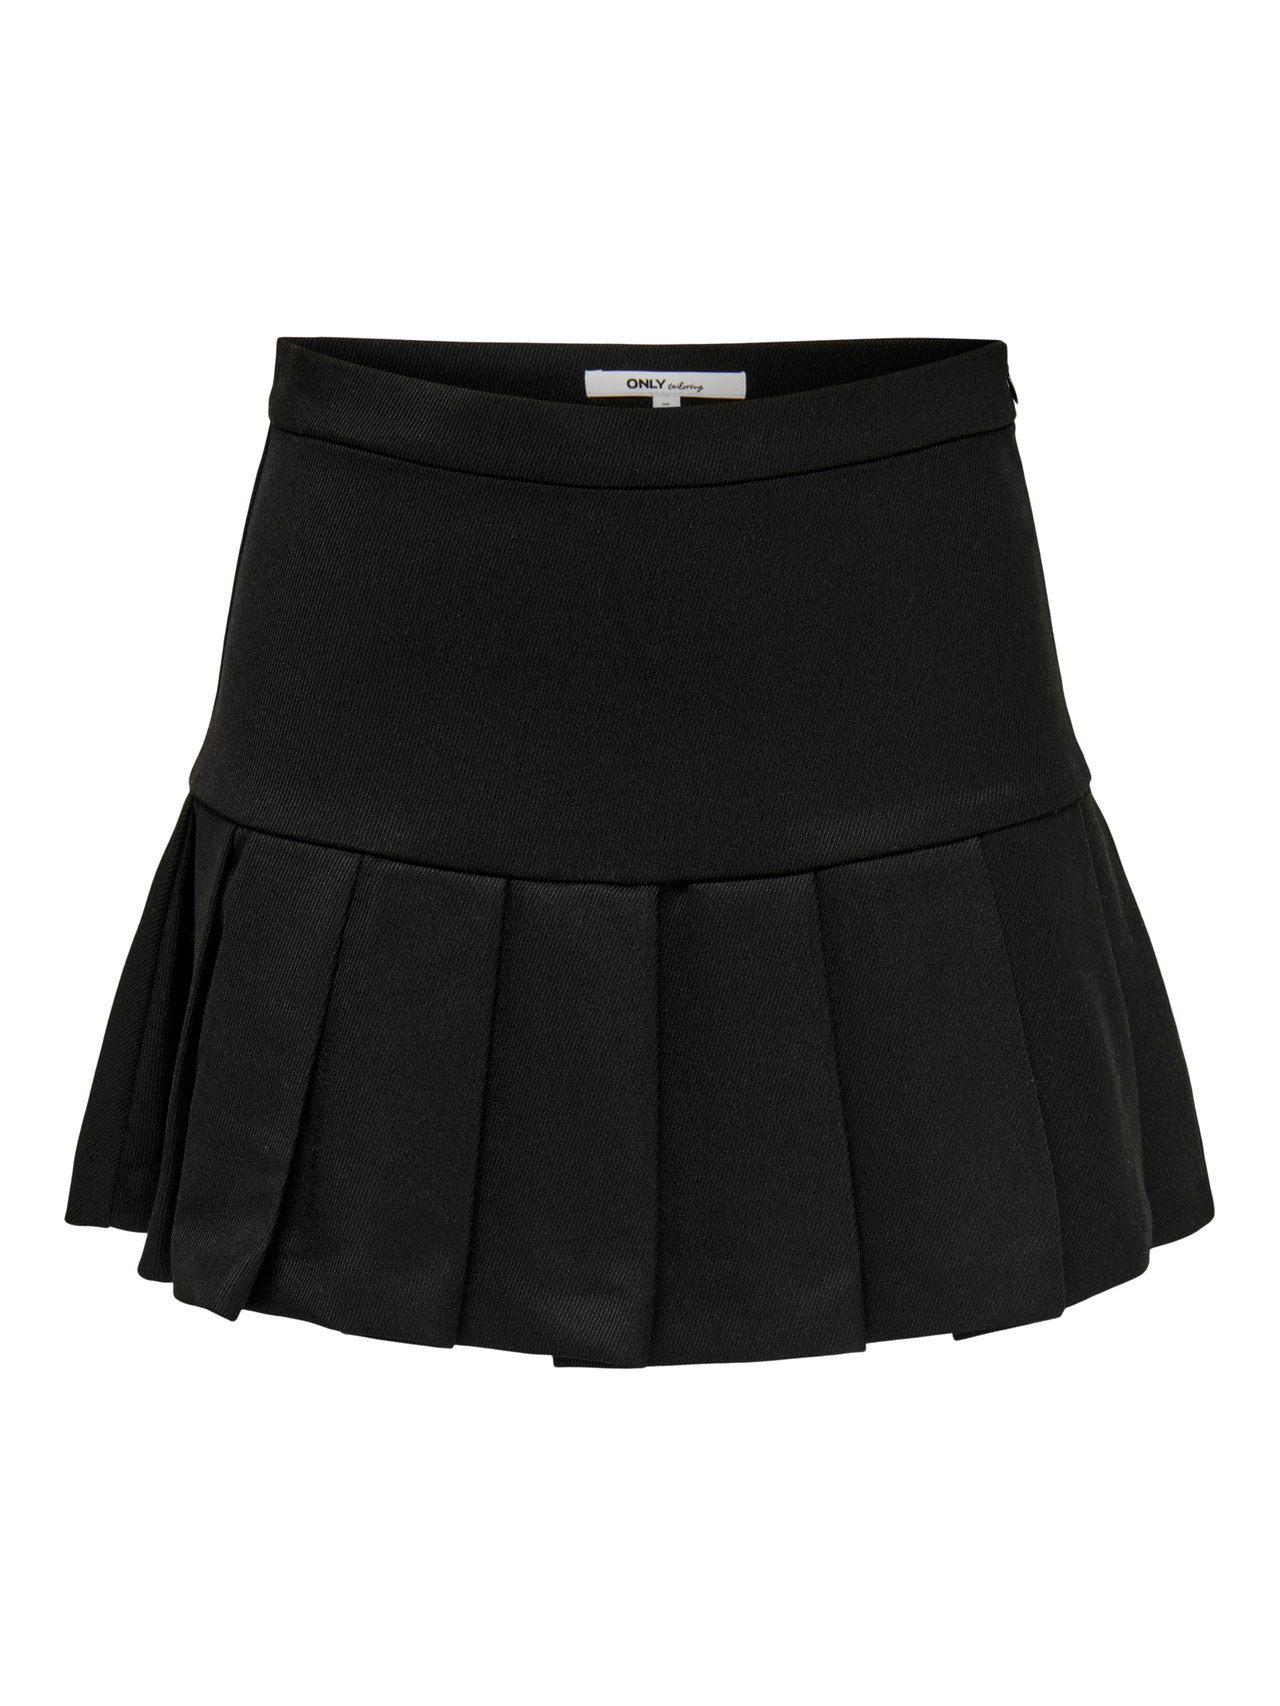 ONLY Short pleated Skirt -Black - 15271818